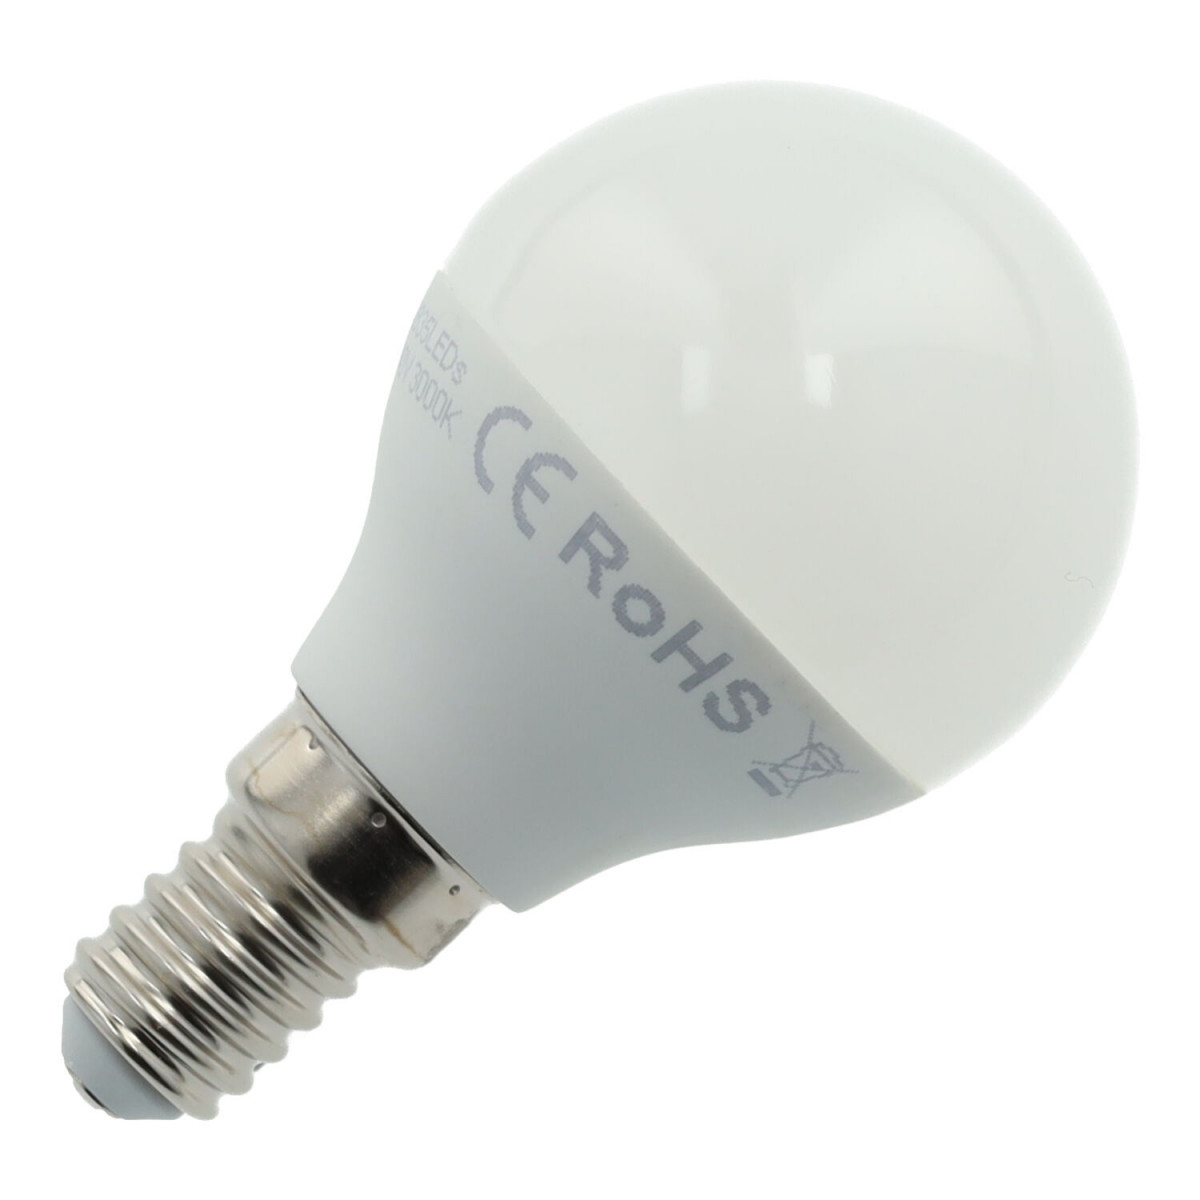 gek idioom speler E14 sphere 5W LED bulb, warm white and cool white light, 410 lumens